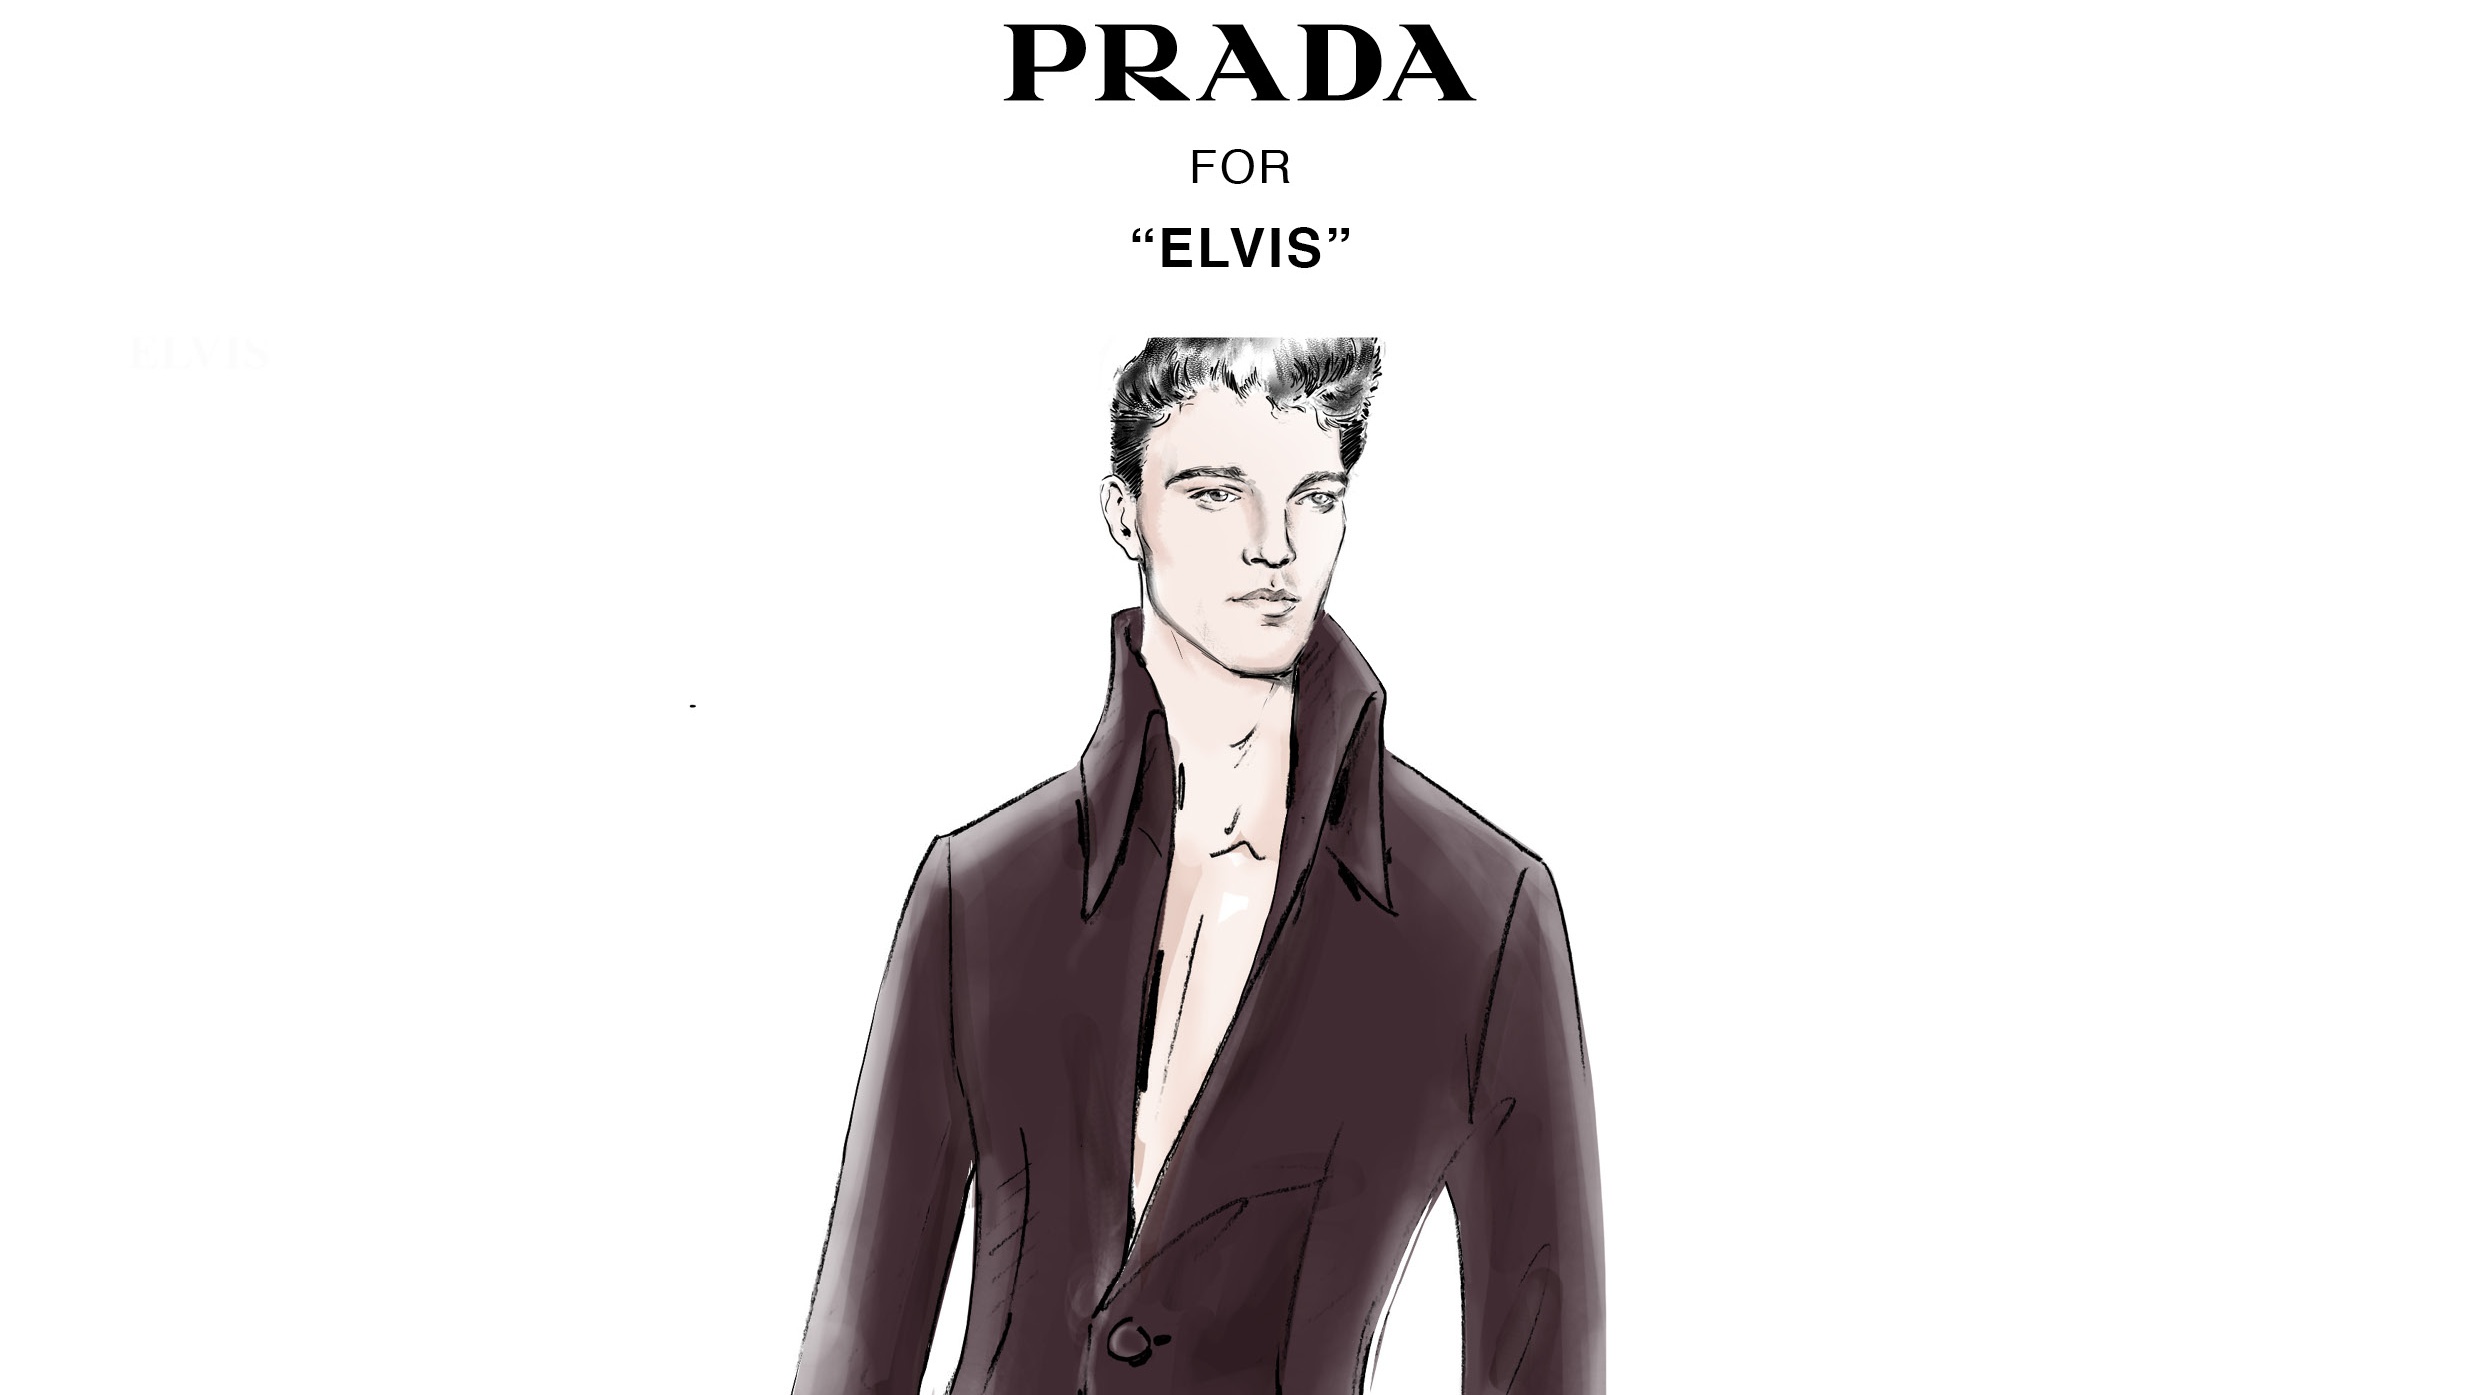 Prada costume design for "Elvis" film